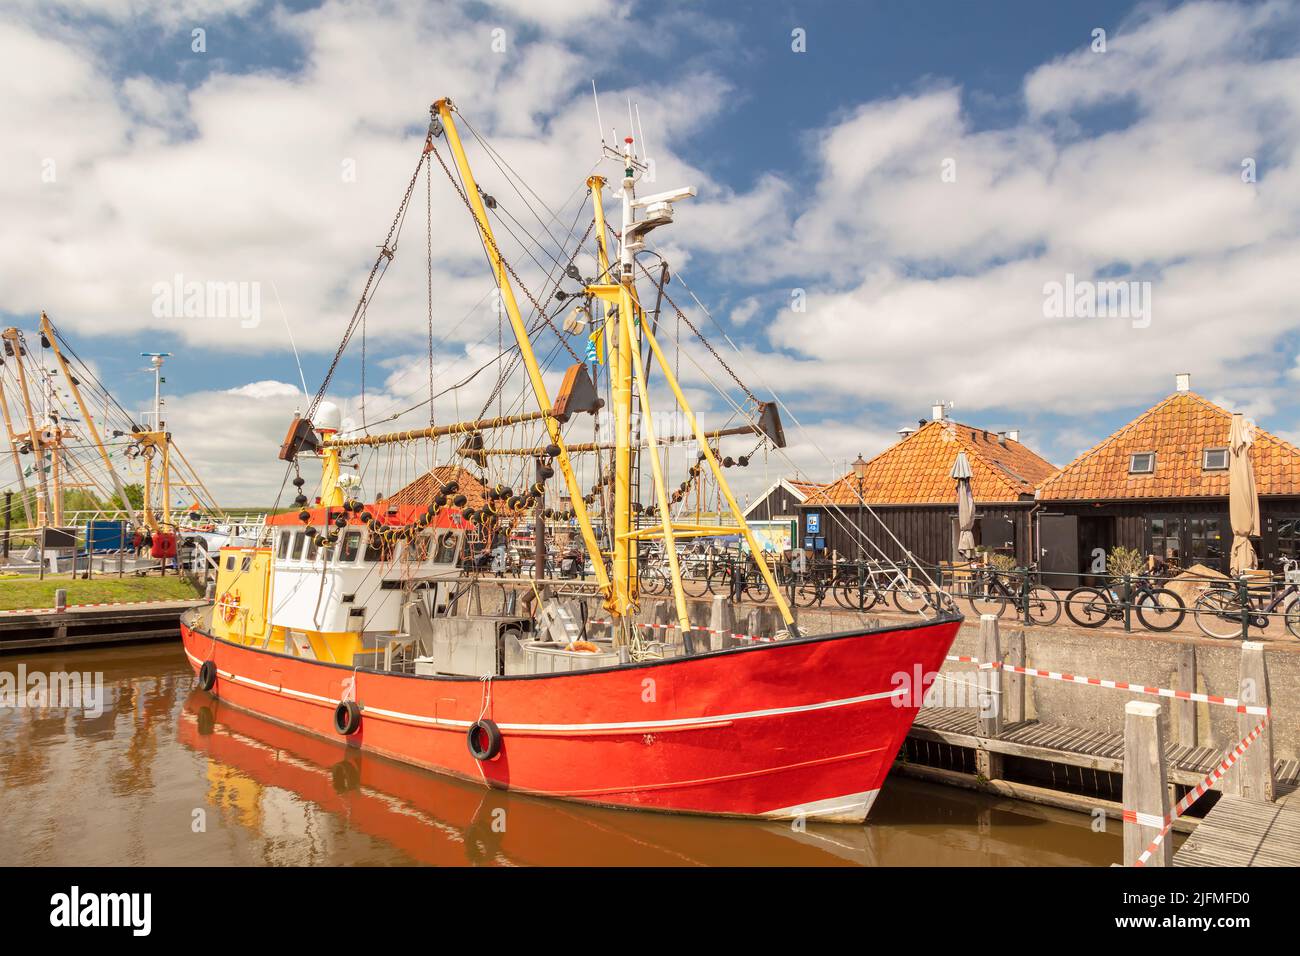 Vue d'été sur le port avec un bateau de pêche et des bâtiments historiques à Zoutkamp, Groningen, pays-Bas Banque D'Images